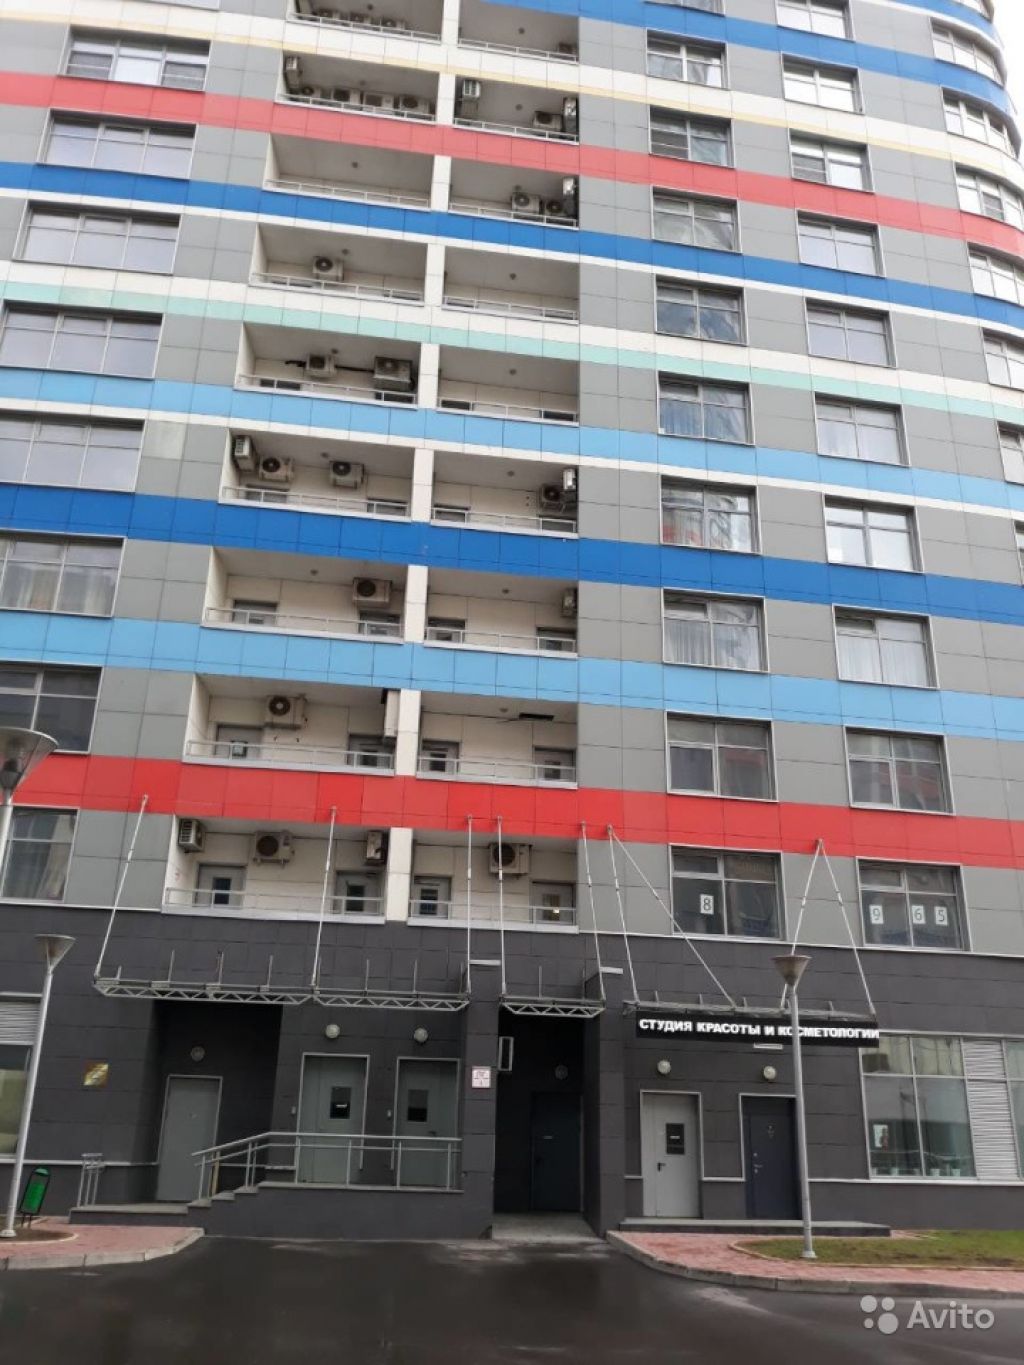 Продам квартиру 1-к квартира 70 м² на 23 этаже 38-этажного монолитного дома в Москве. Фото 1